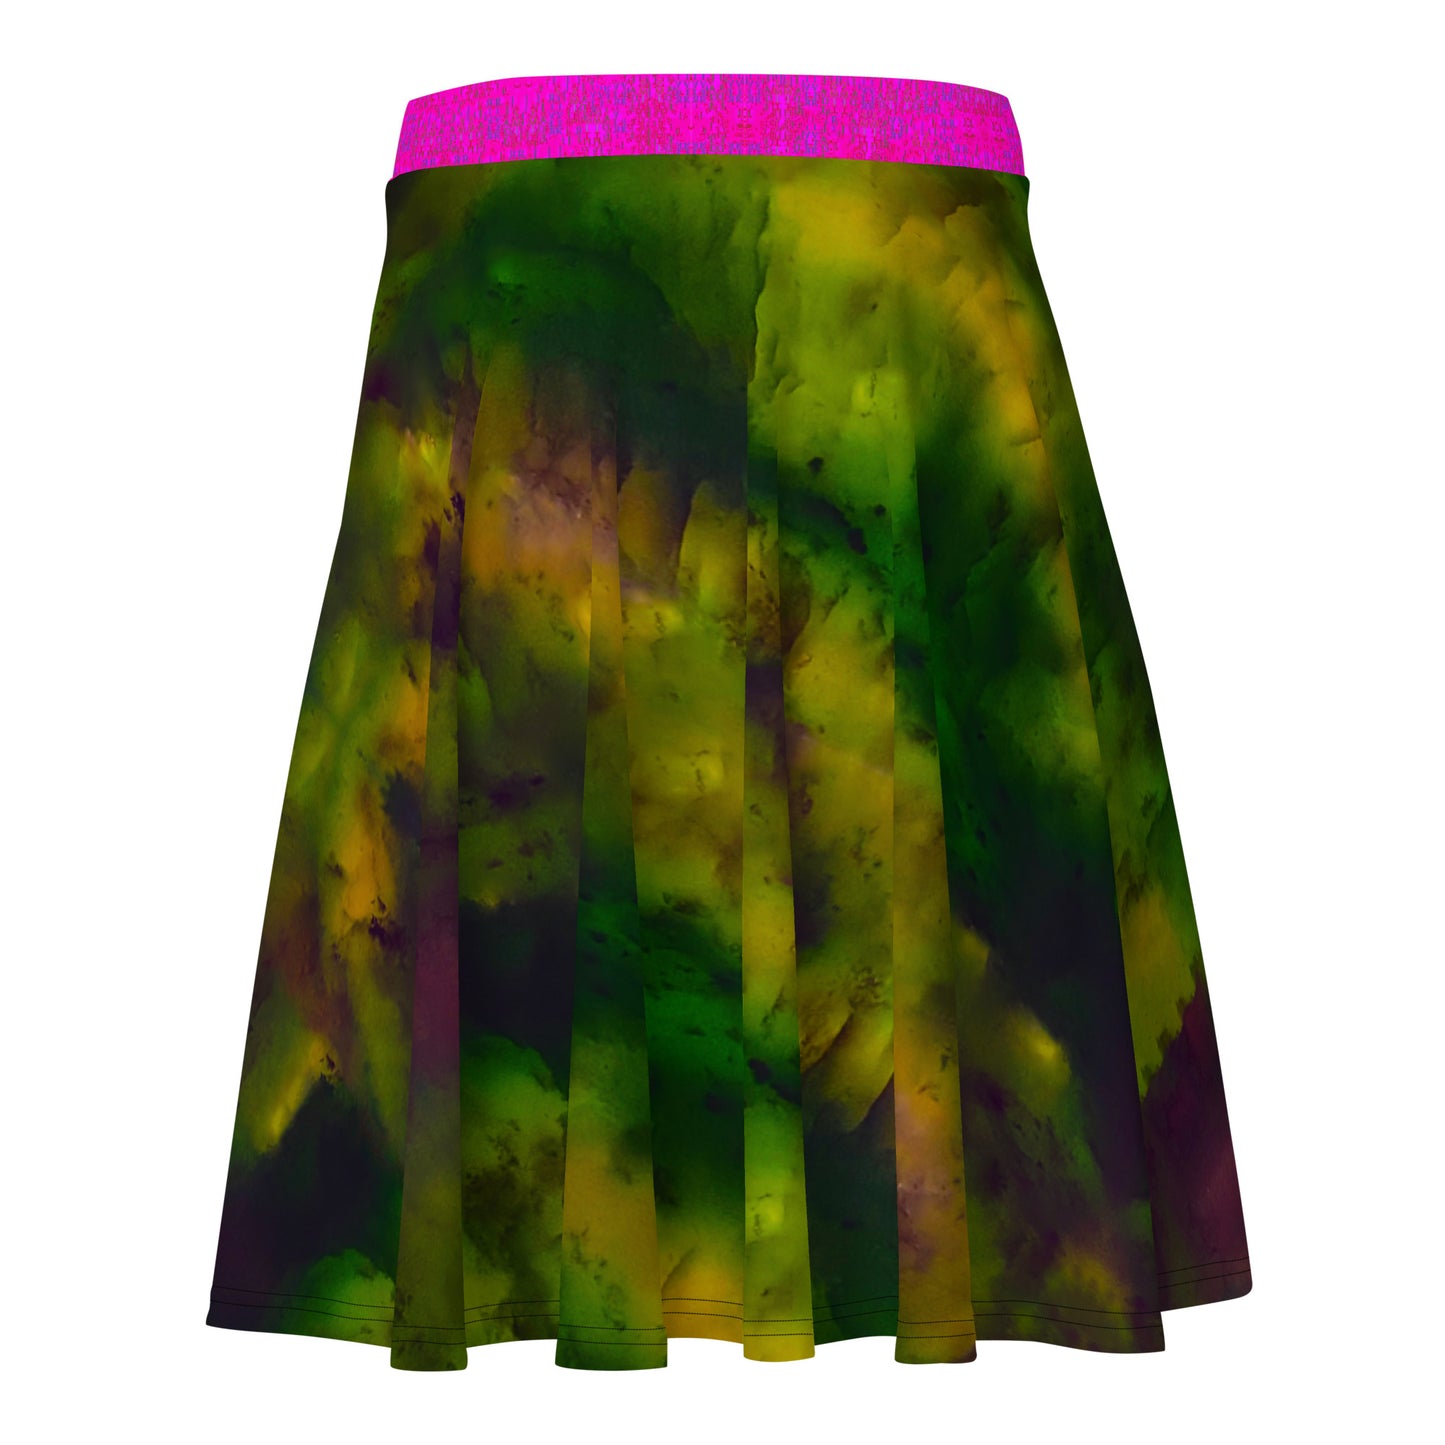 Skater Skirt (Her/They) RJSTH@Fabric#7 RJSTHw2020 RJS